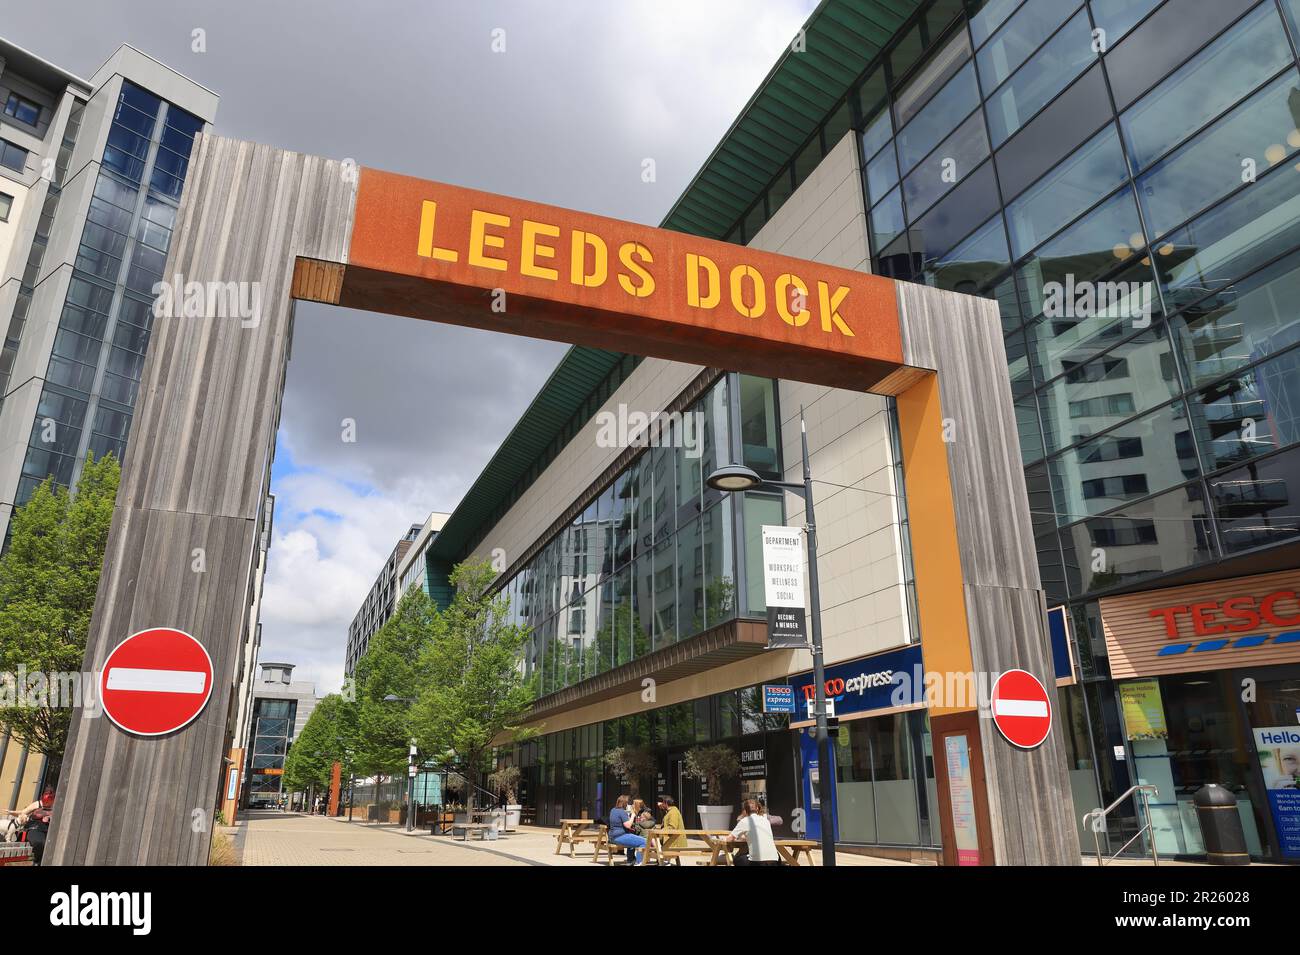 Leeds Dock, ein neues kreatives Dorf am Wasser, in dem Innovation, Kultur und Unternehmergeist zusammenkommen, um ein neues Reiseziel und einen neuen Ort zum Leben zu schaffen, Großbritannien Stockfoto